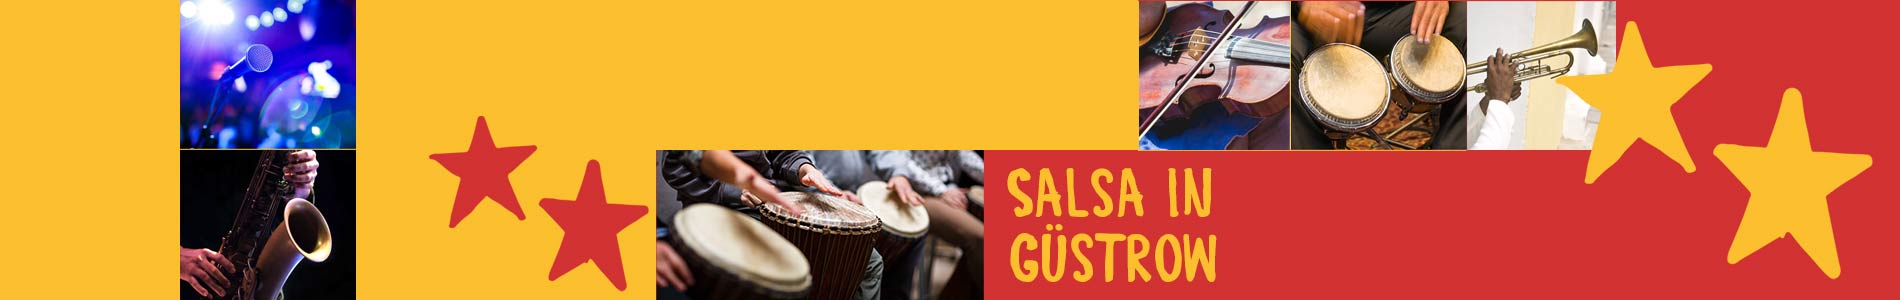 Salsa in Güstrow – Salsa lernen und tanzen, Tanzkurse, Partys, Veranstaltungen